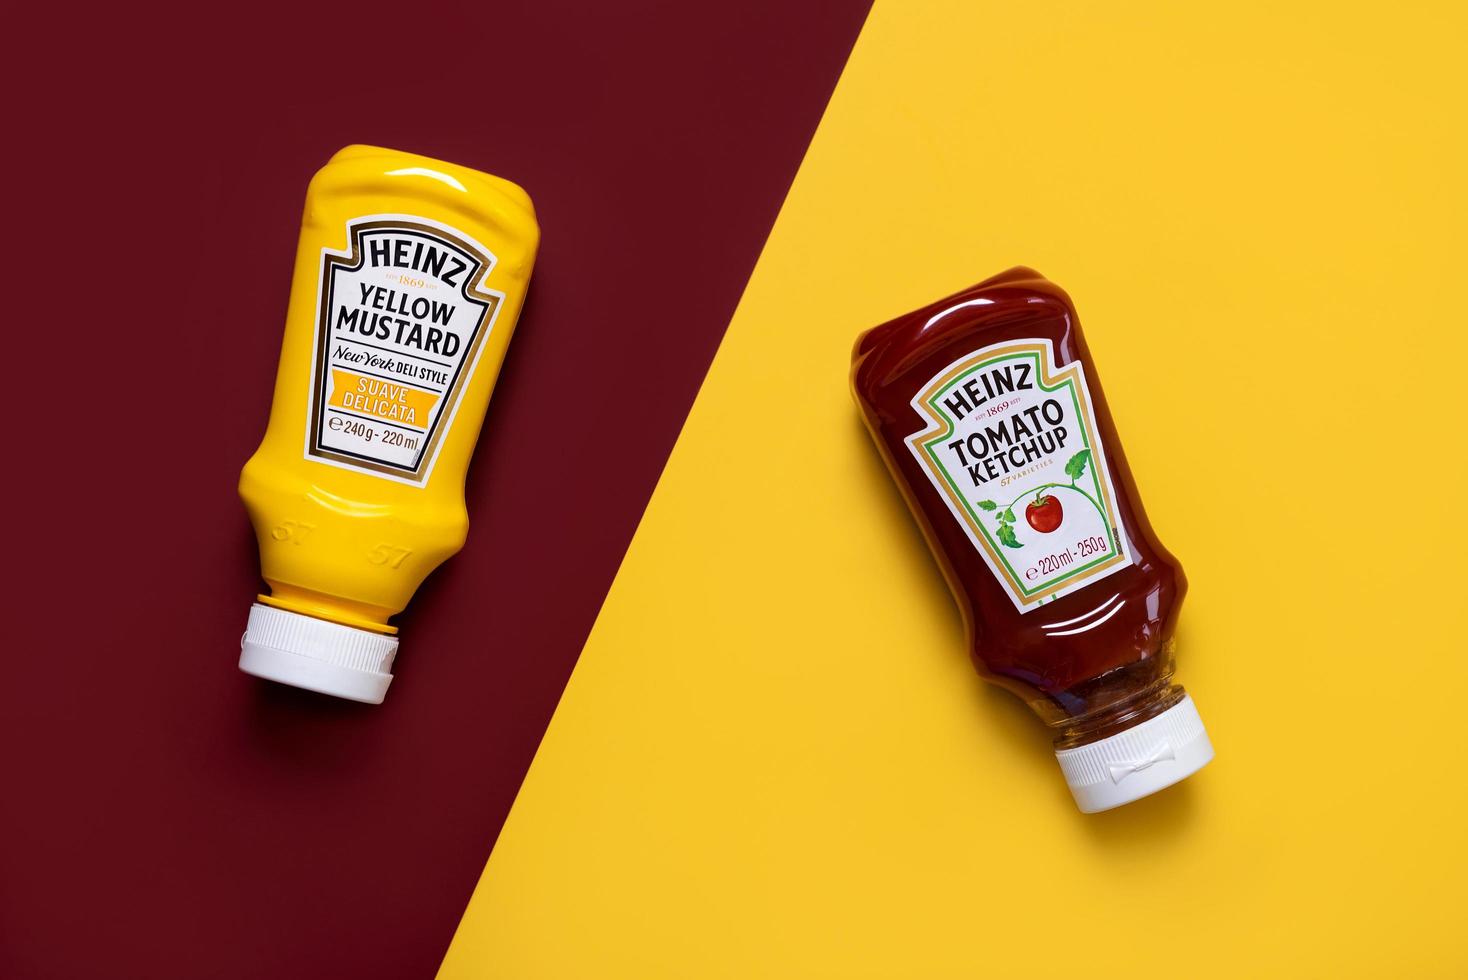 bouteille de ketchup heinz et bouteille de moutarde jaune heinz photo